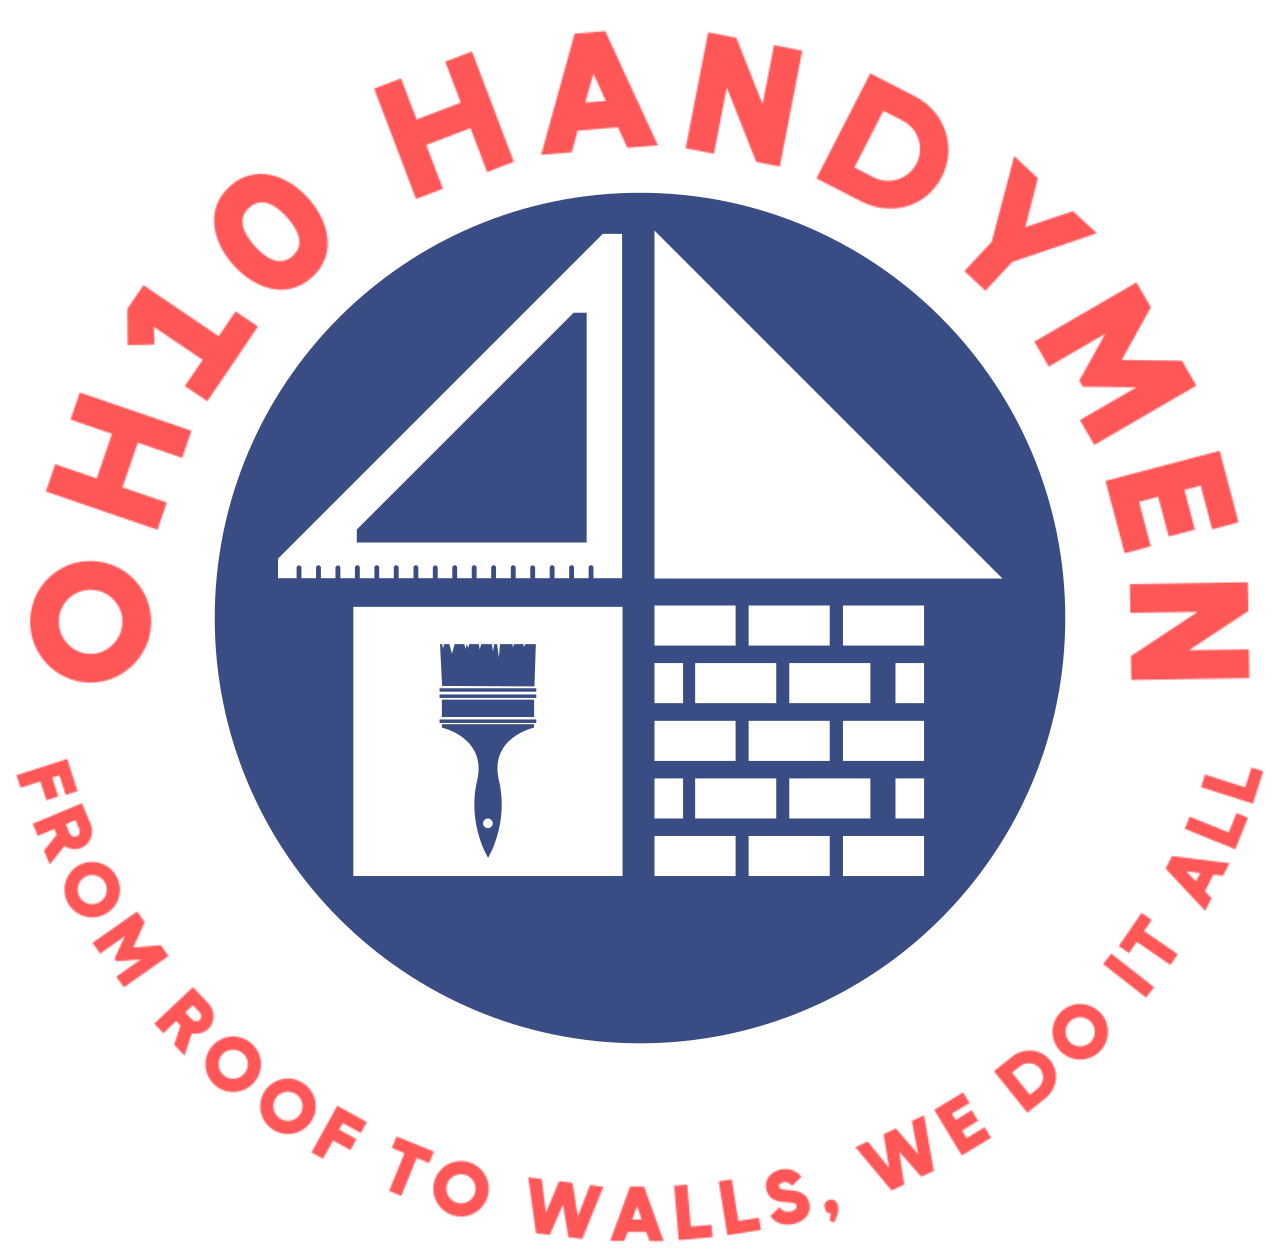 OH10 Handymen's logo